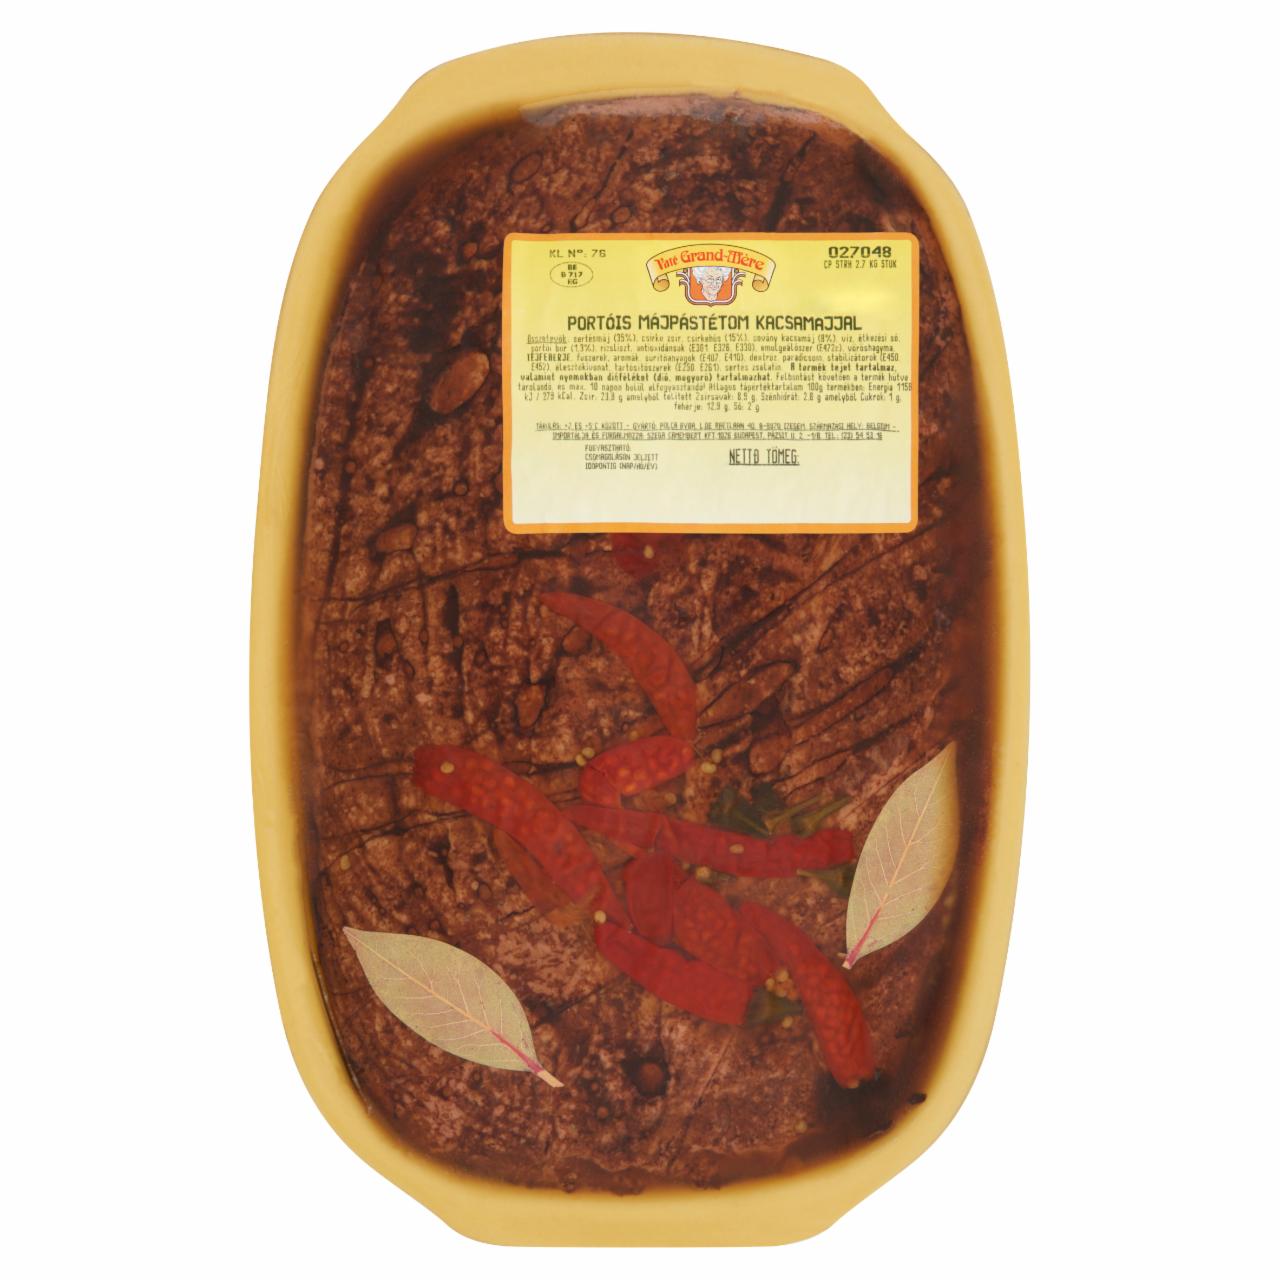 Képek - Paté Grand-Mère portóis májpástétom kacsamájjal 2,7 kg